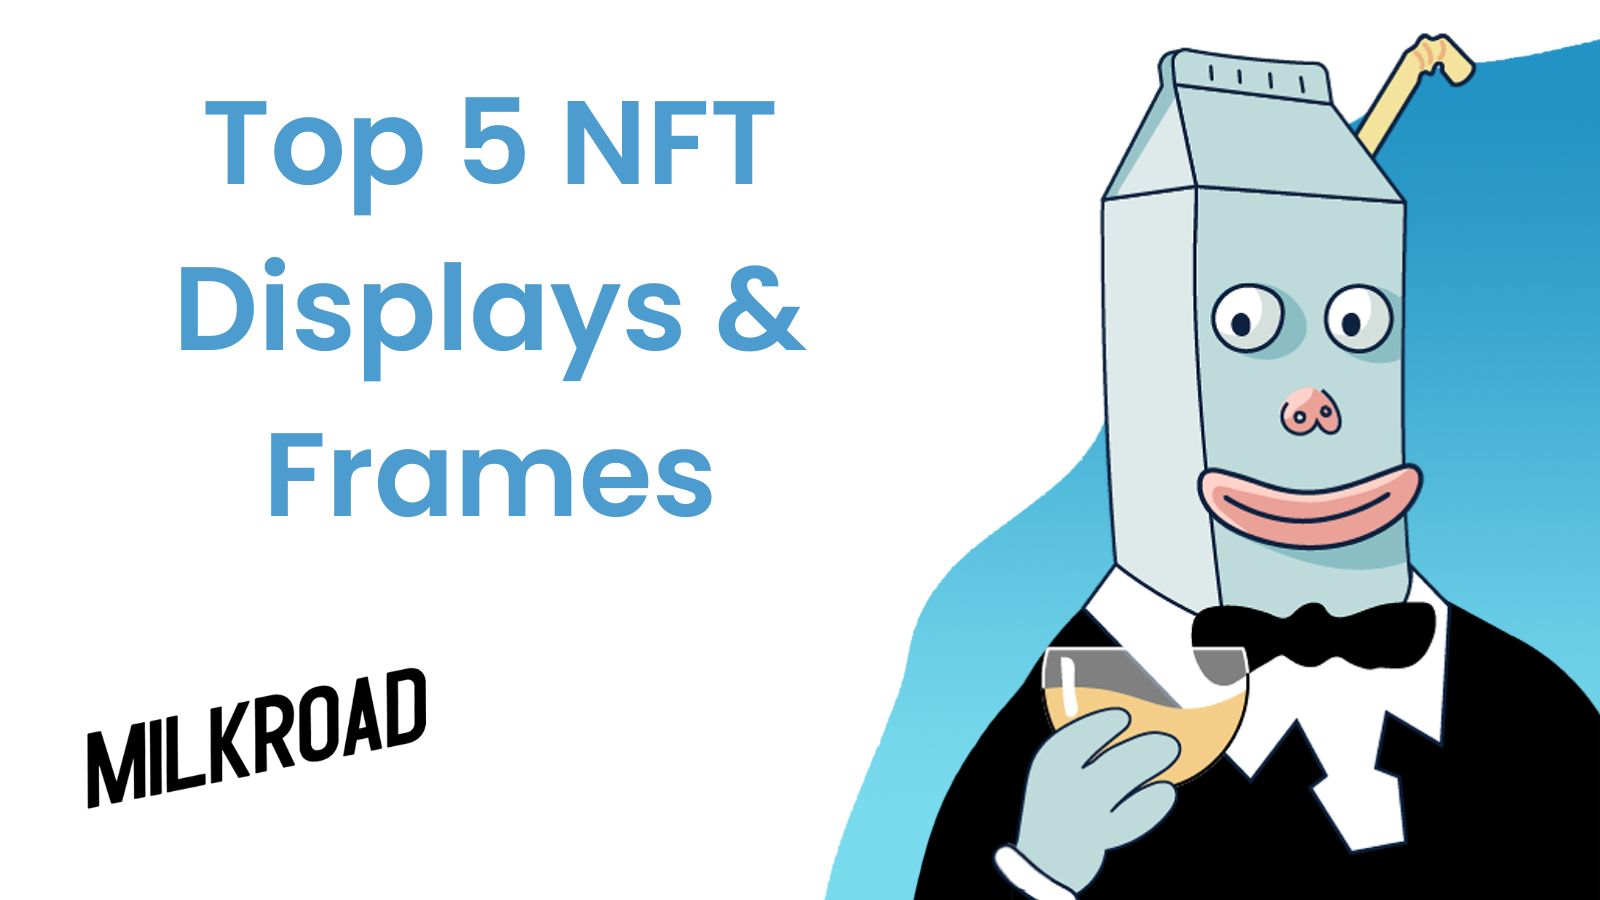 Top 5 NFT Displays & Frames for Digital Art